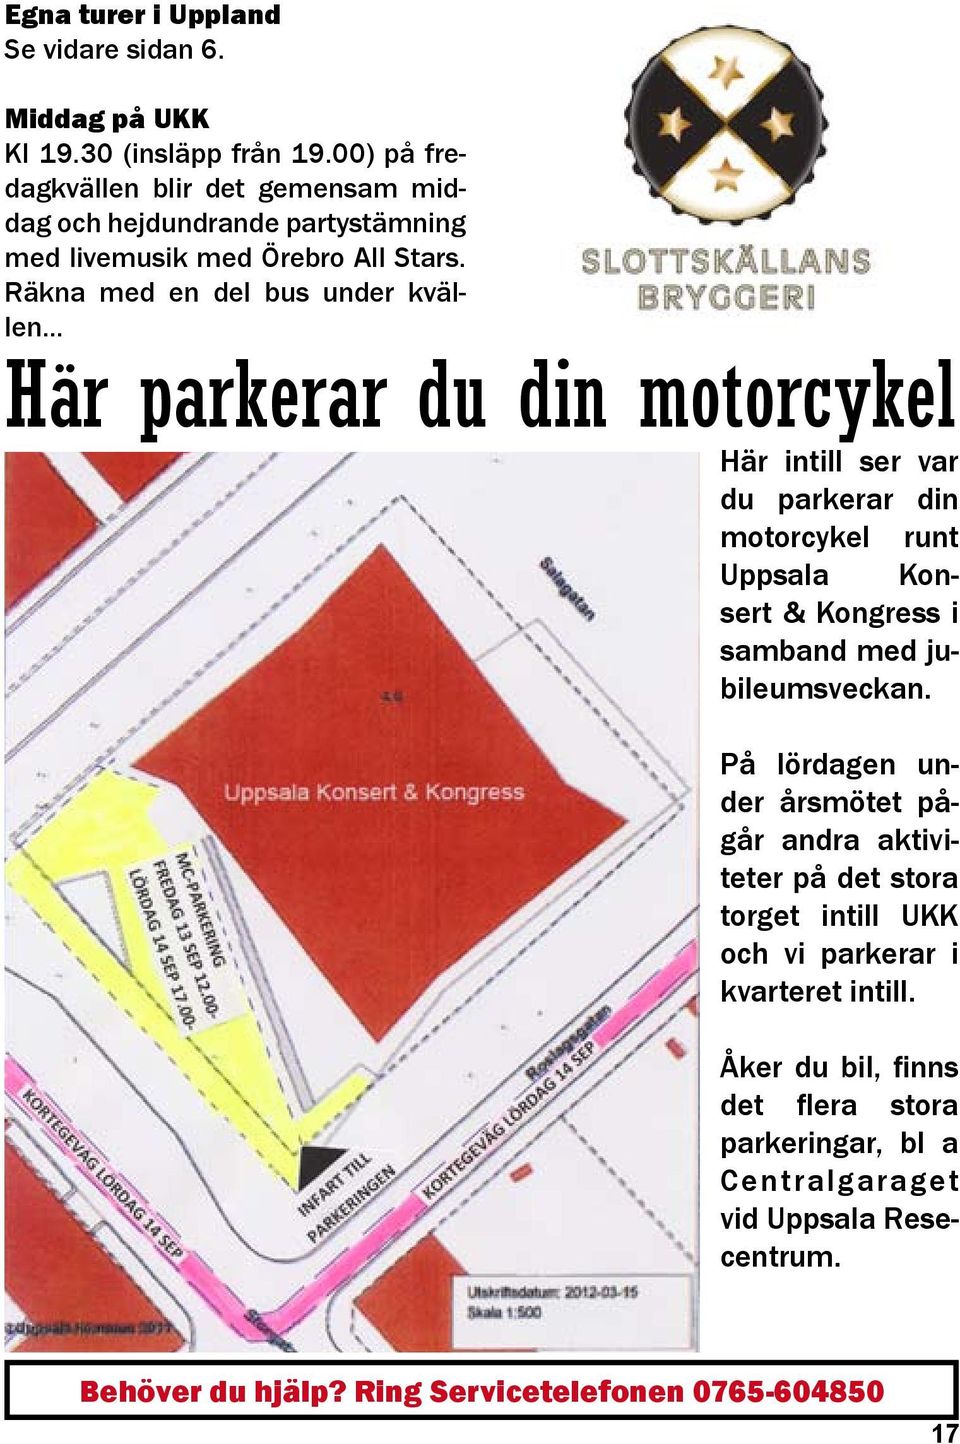 .. du parkerar din motorcykel runt Uppsala Konsert & Kongress i samband med jubileumsveckan.